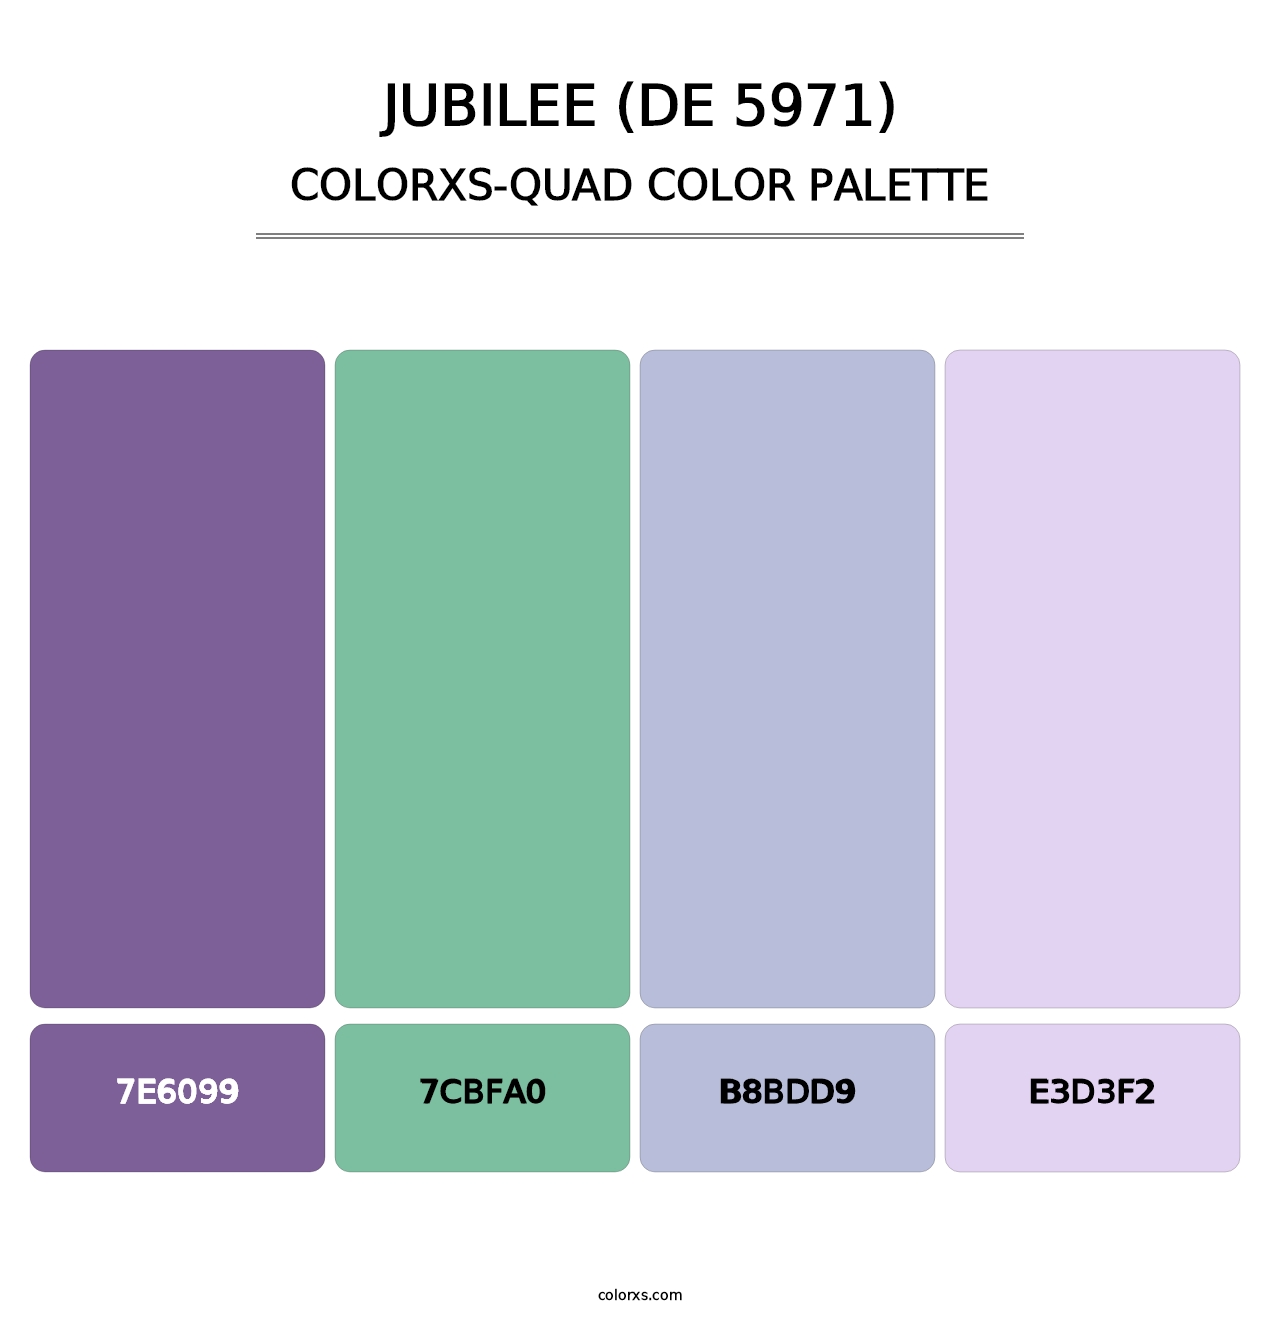 Jubilee (DE 5971) - Colorxs Quad Palette